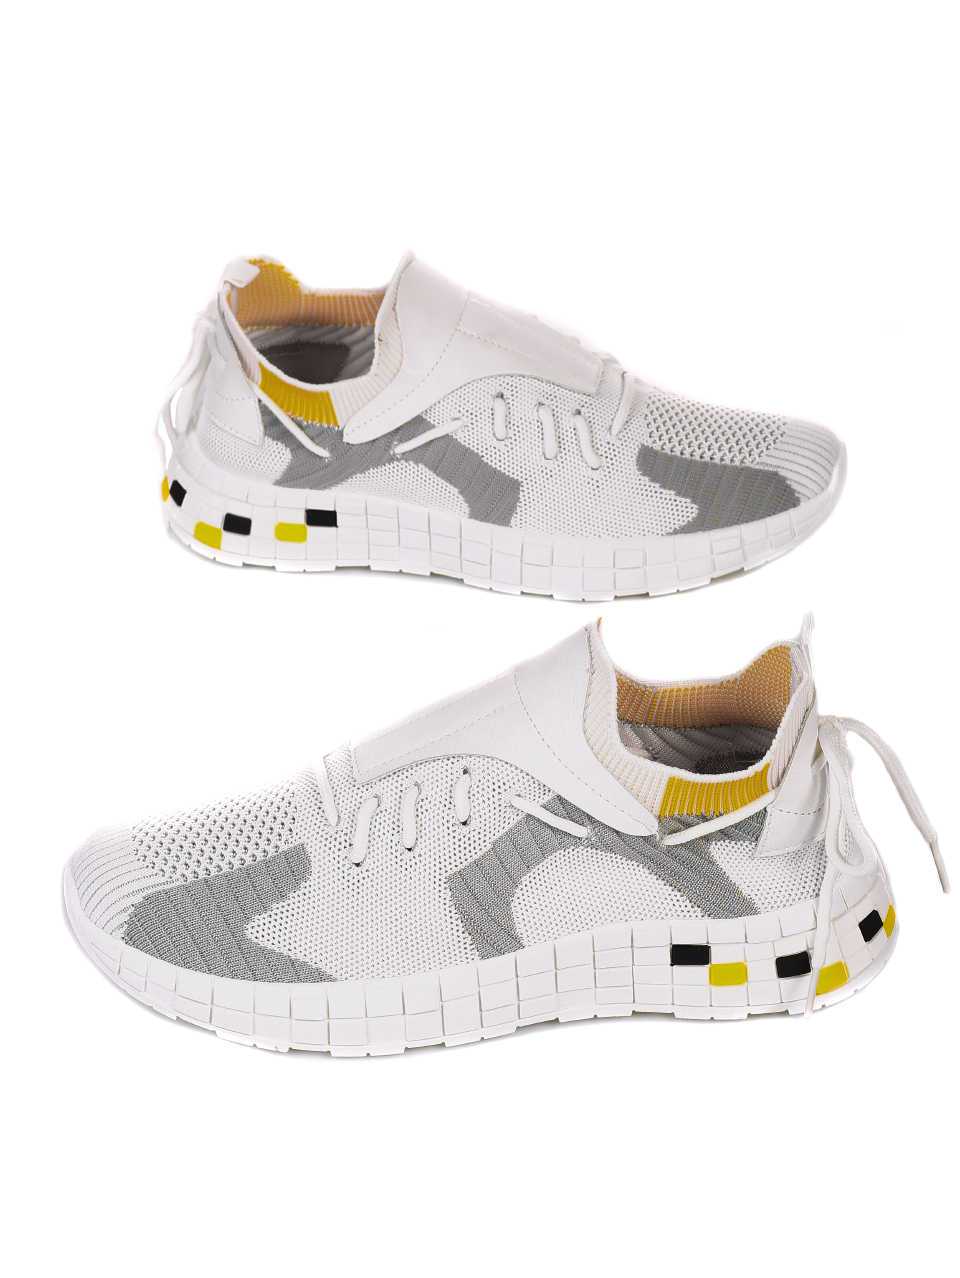 Ежедневни мъжки обувки в бяло и жълто 7U-21060 white/yellow